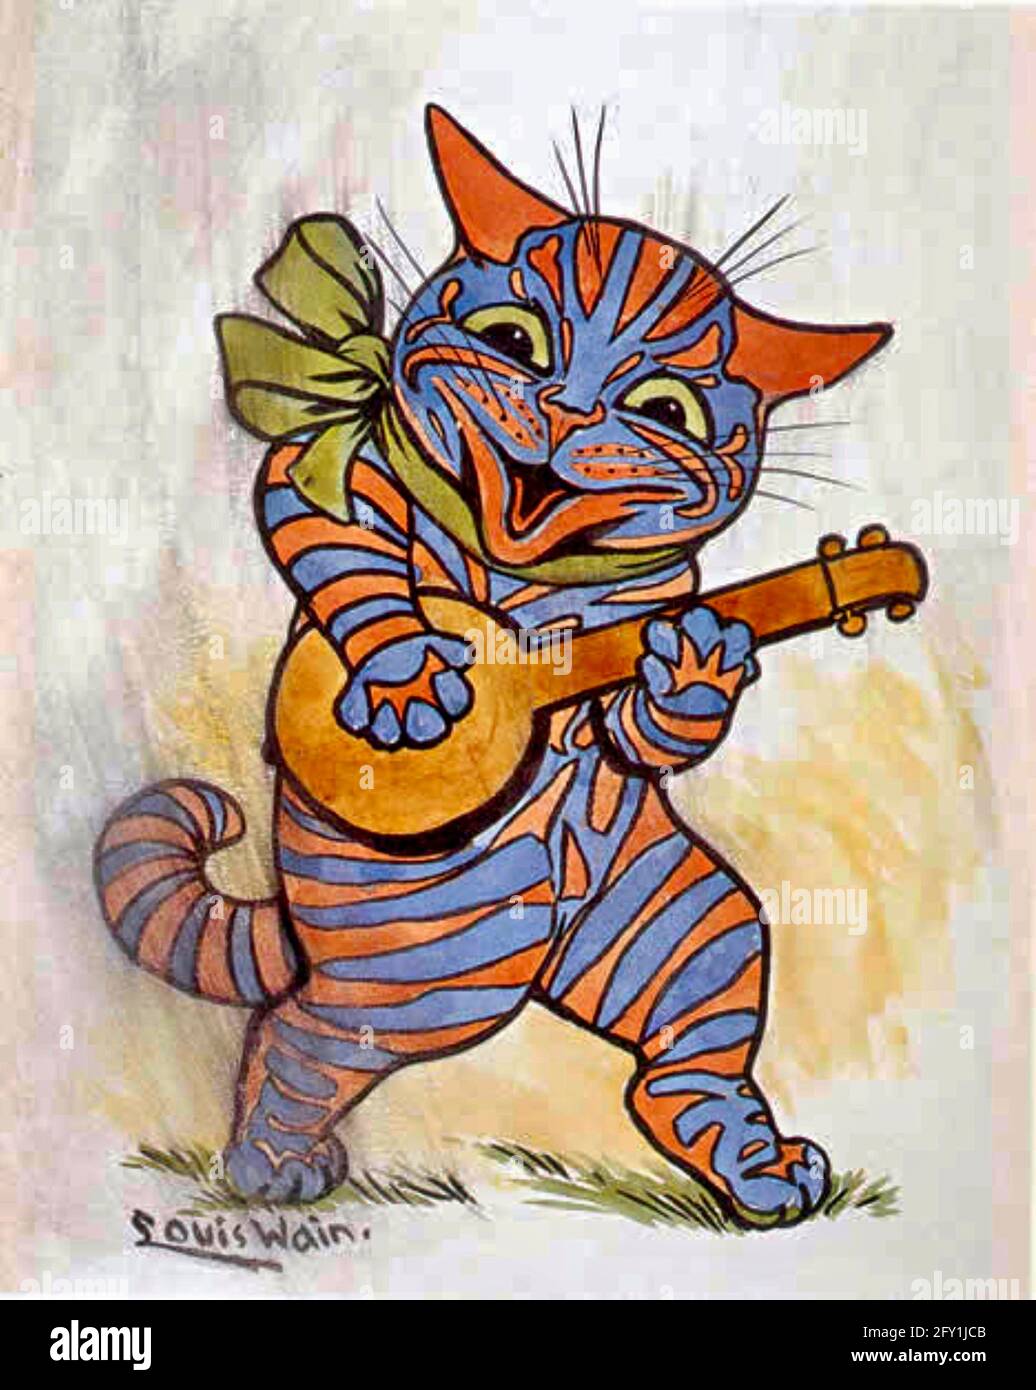 Louis Wain - Lute/Banjo jugando gato Fotografía de stock - Alamy